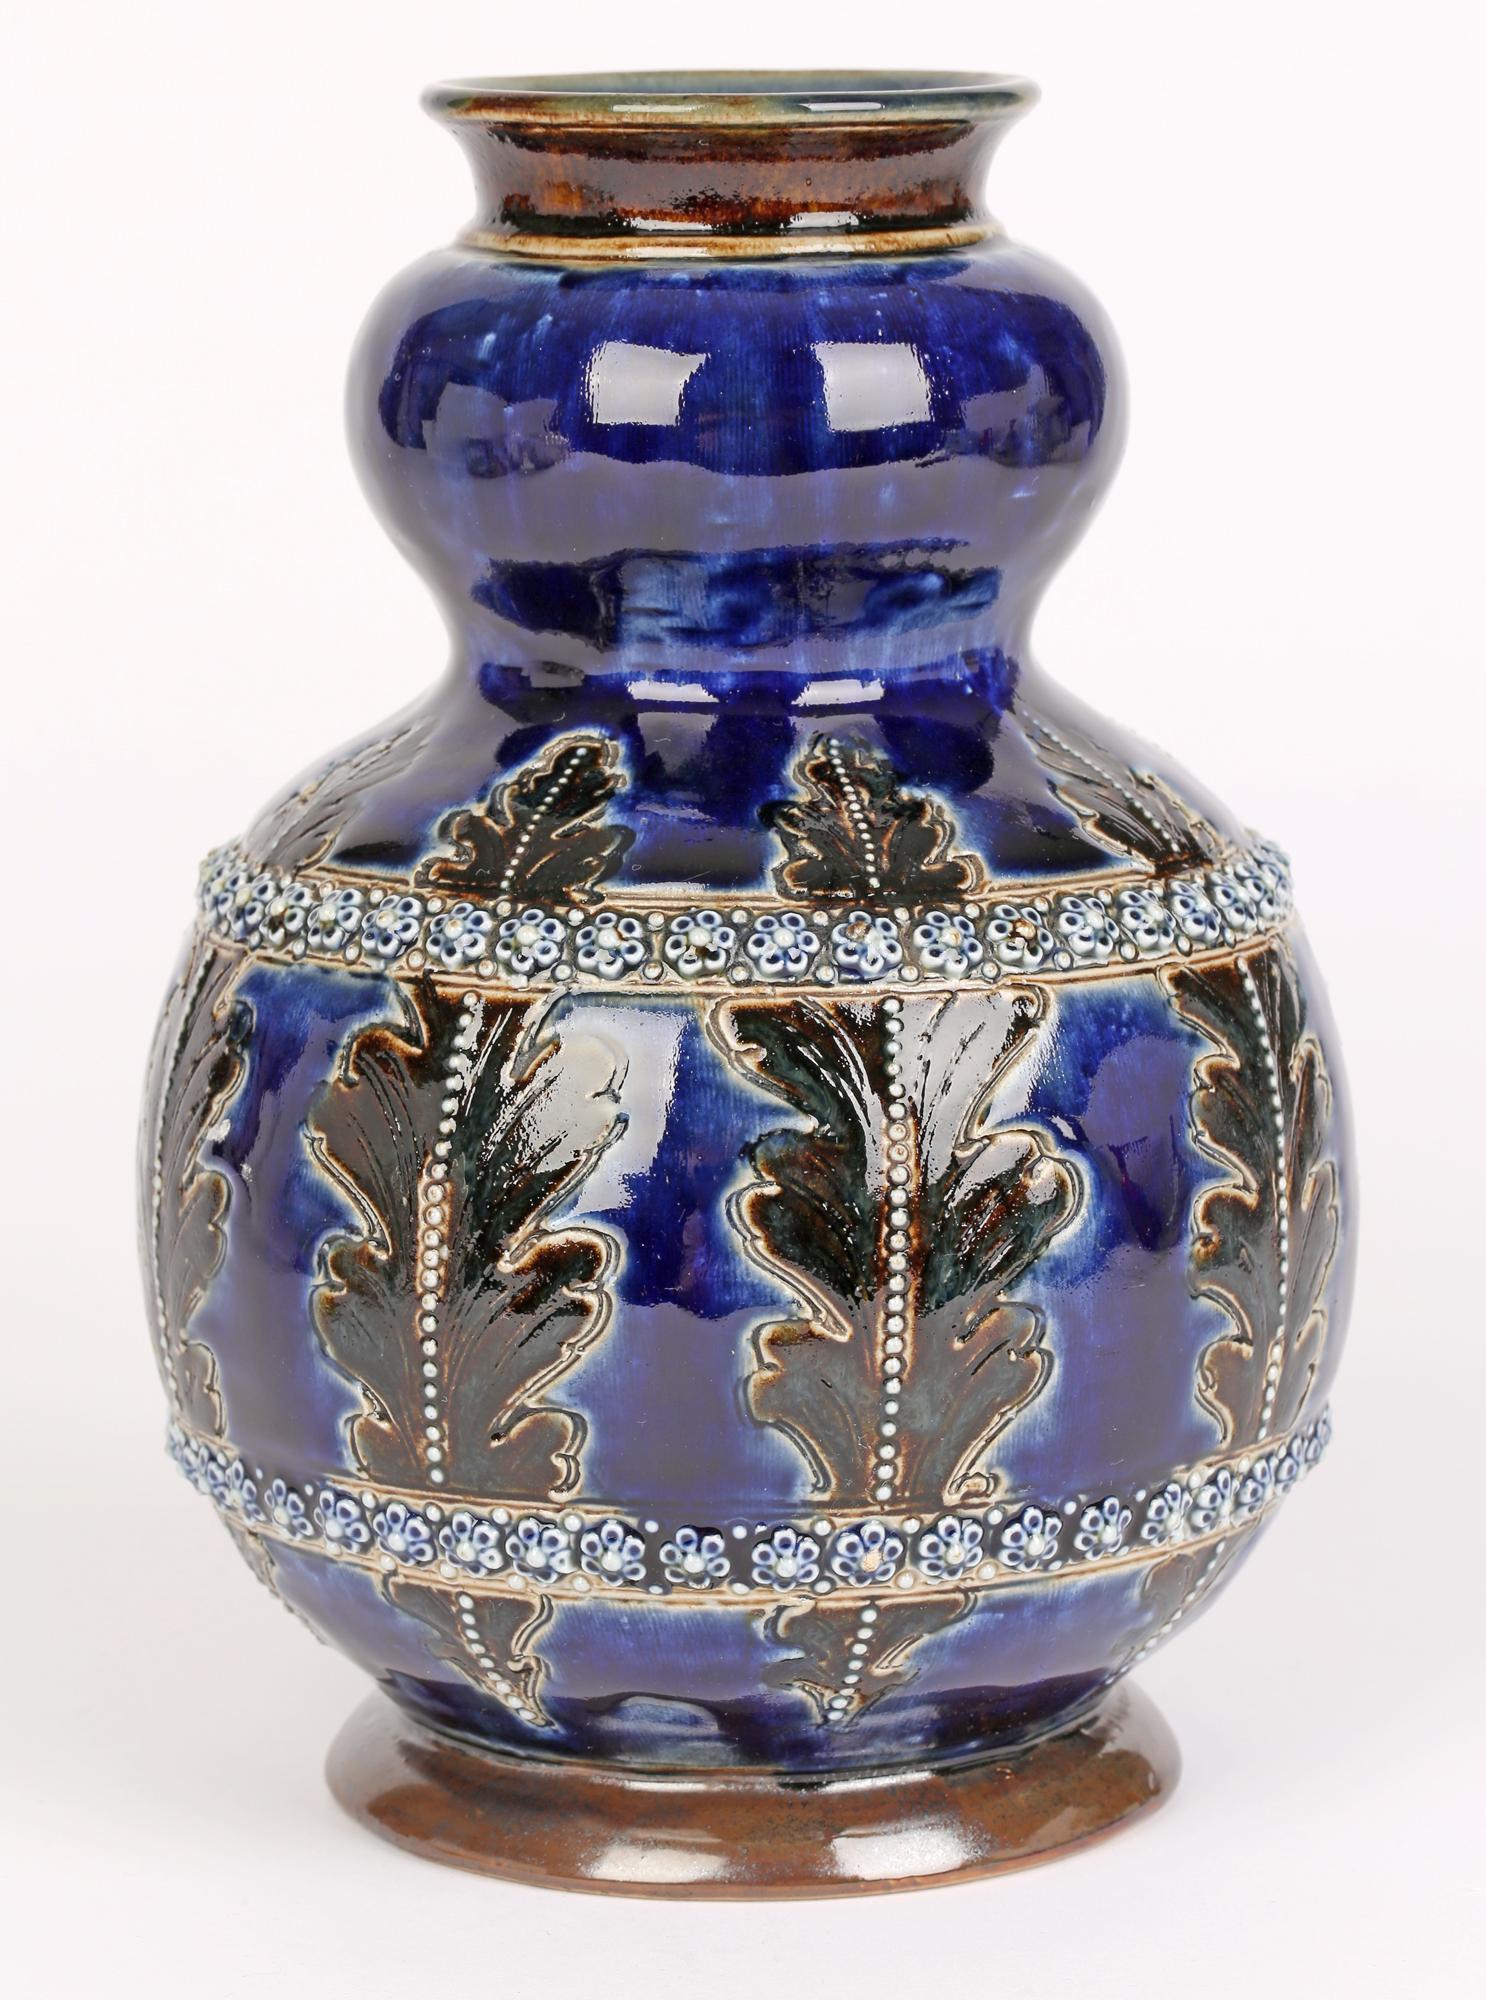 George Tinworth for Doulton Lambeth Leaf & Floral Design Art Pottery Vase 1877   6